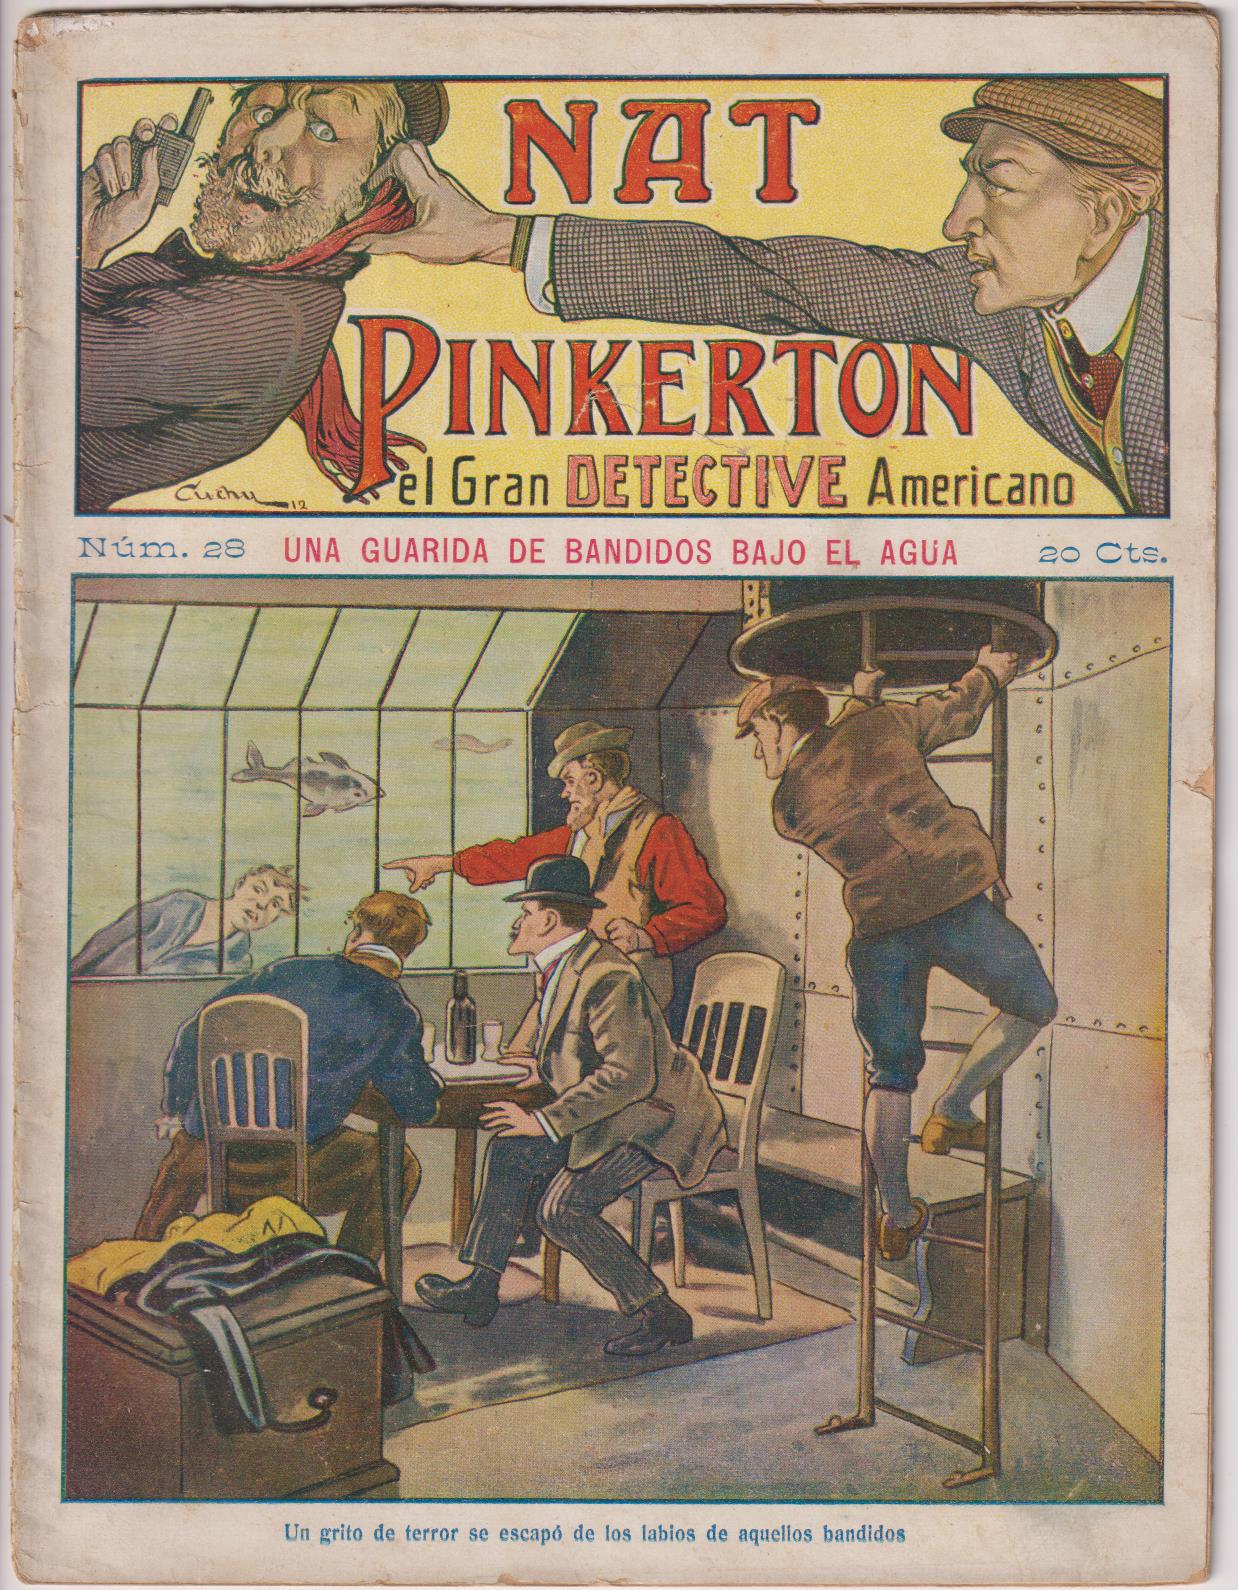 Nat Pinkerton. El Gran detective Americano nº 28. Seguí. (26x21) 31 p.p. con imágenes